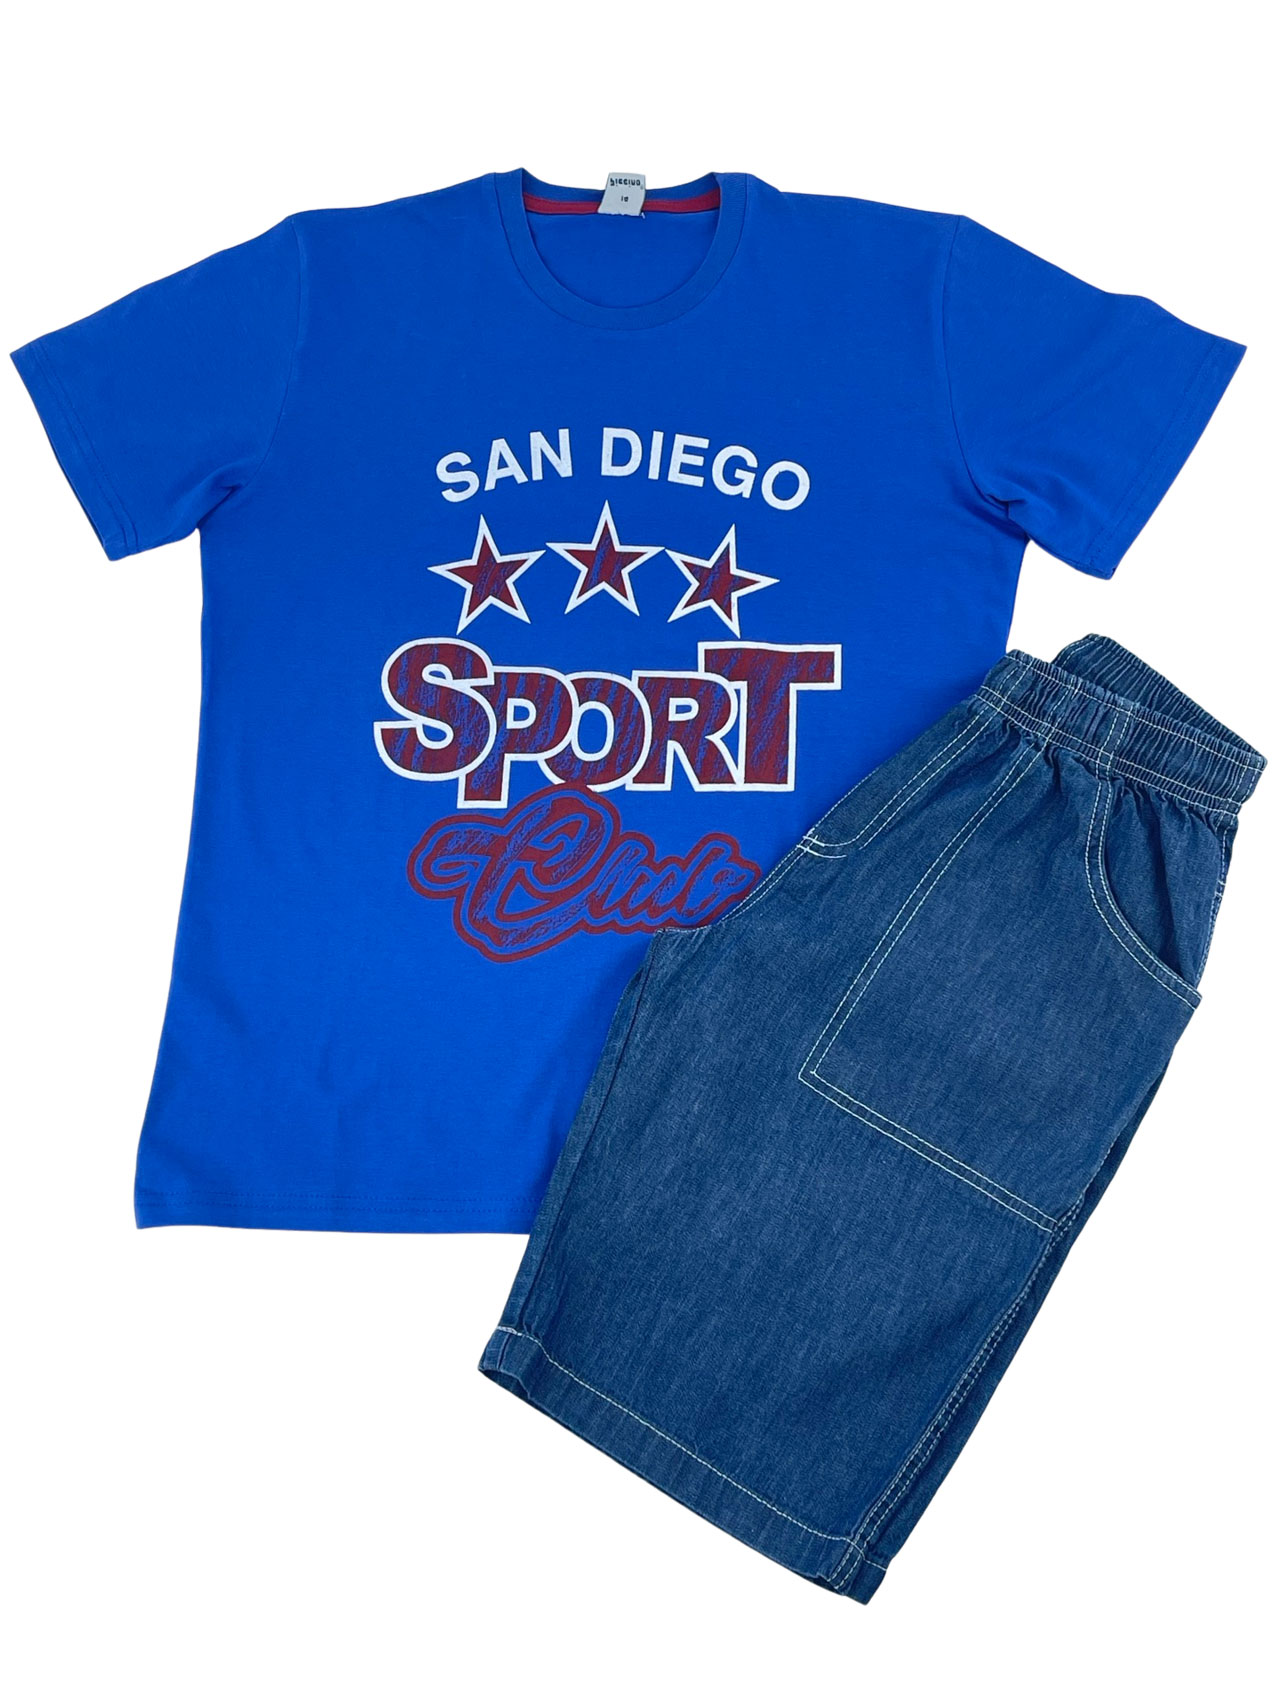 Set boy's blouse-shorts-jeans set code 118040